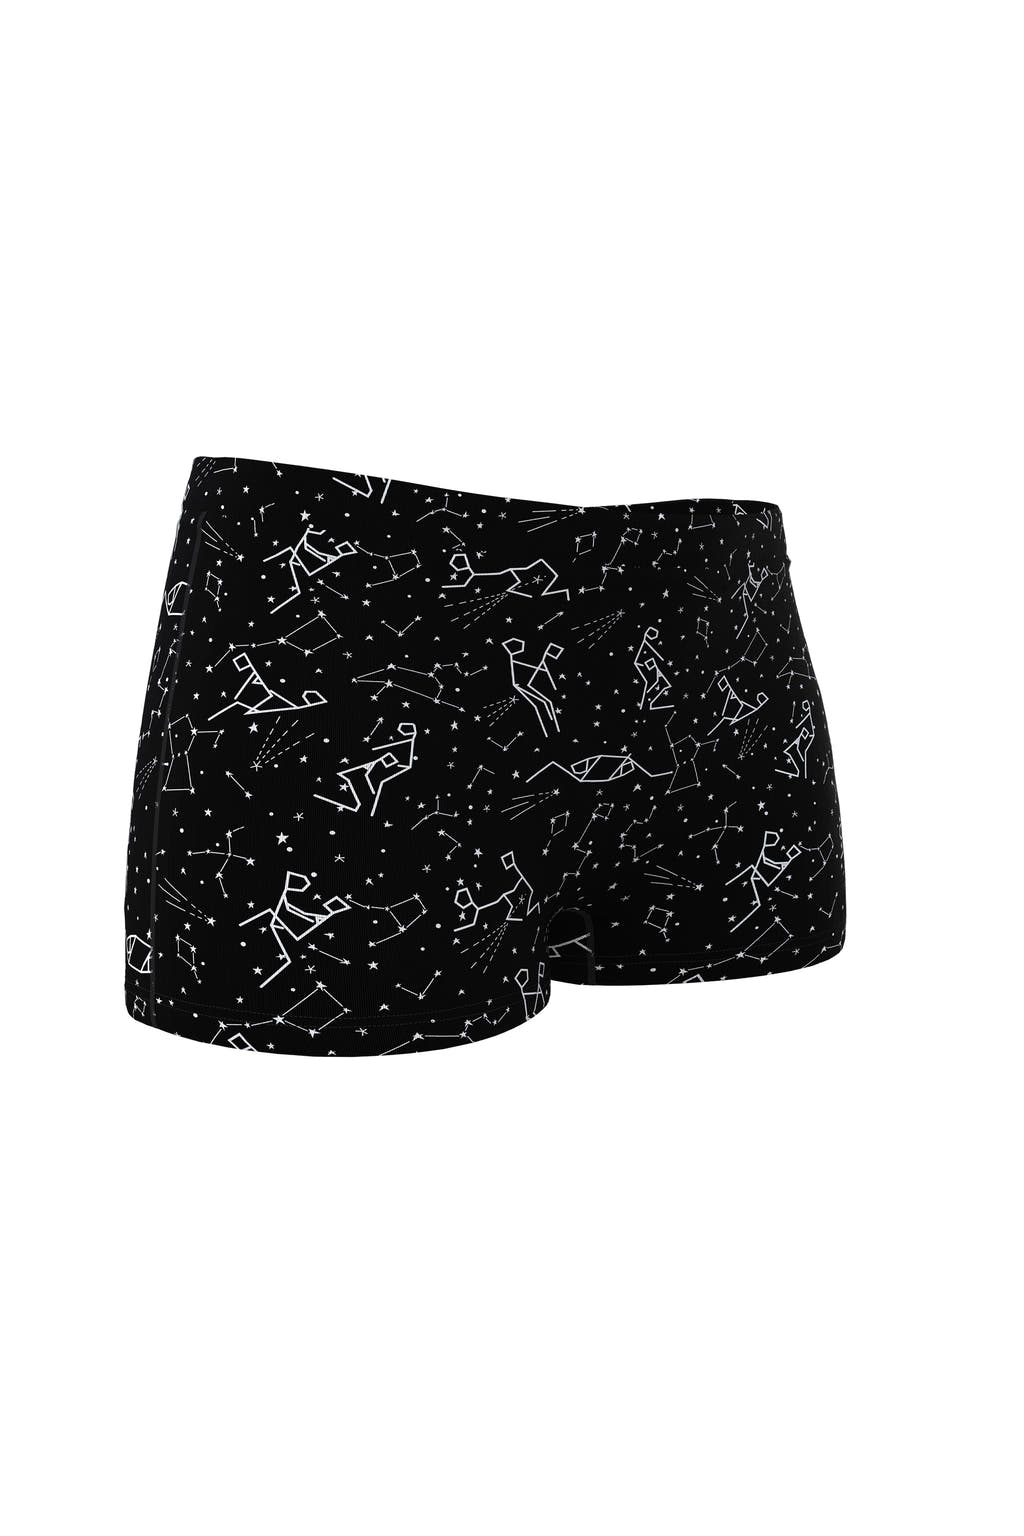 boyshort star pattern underwear